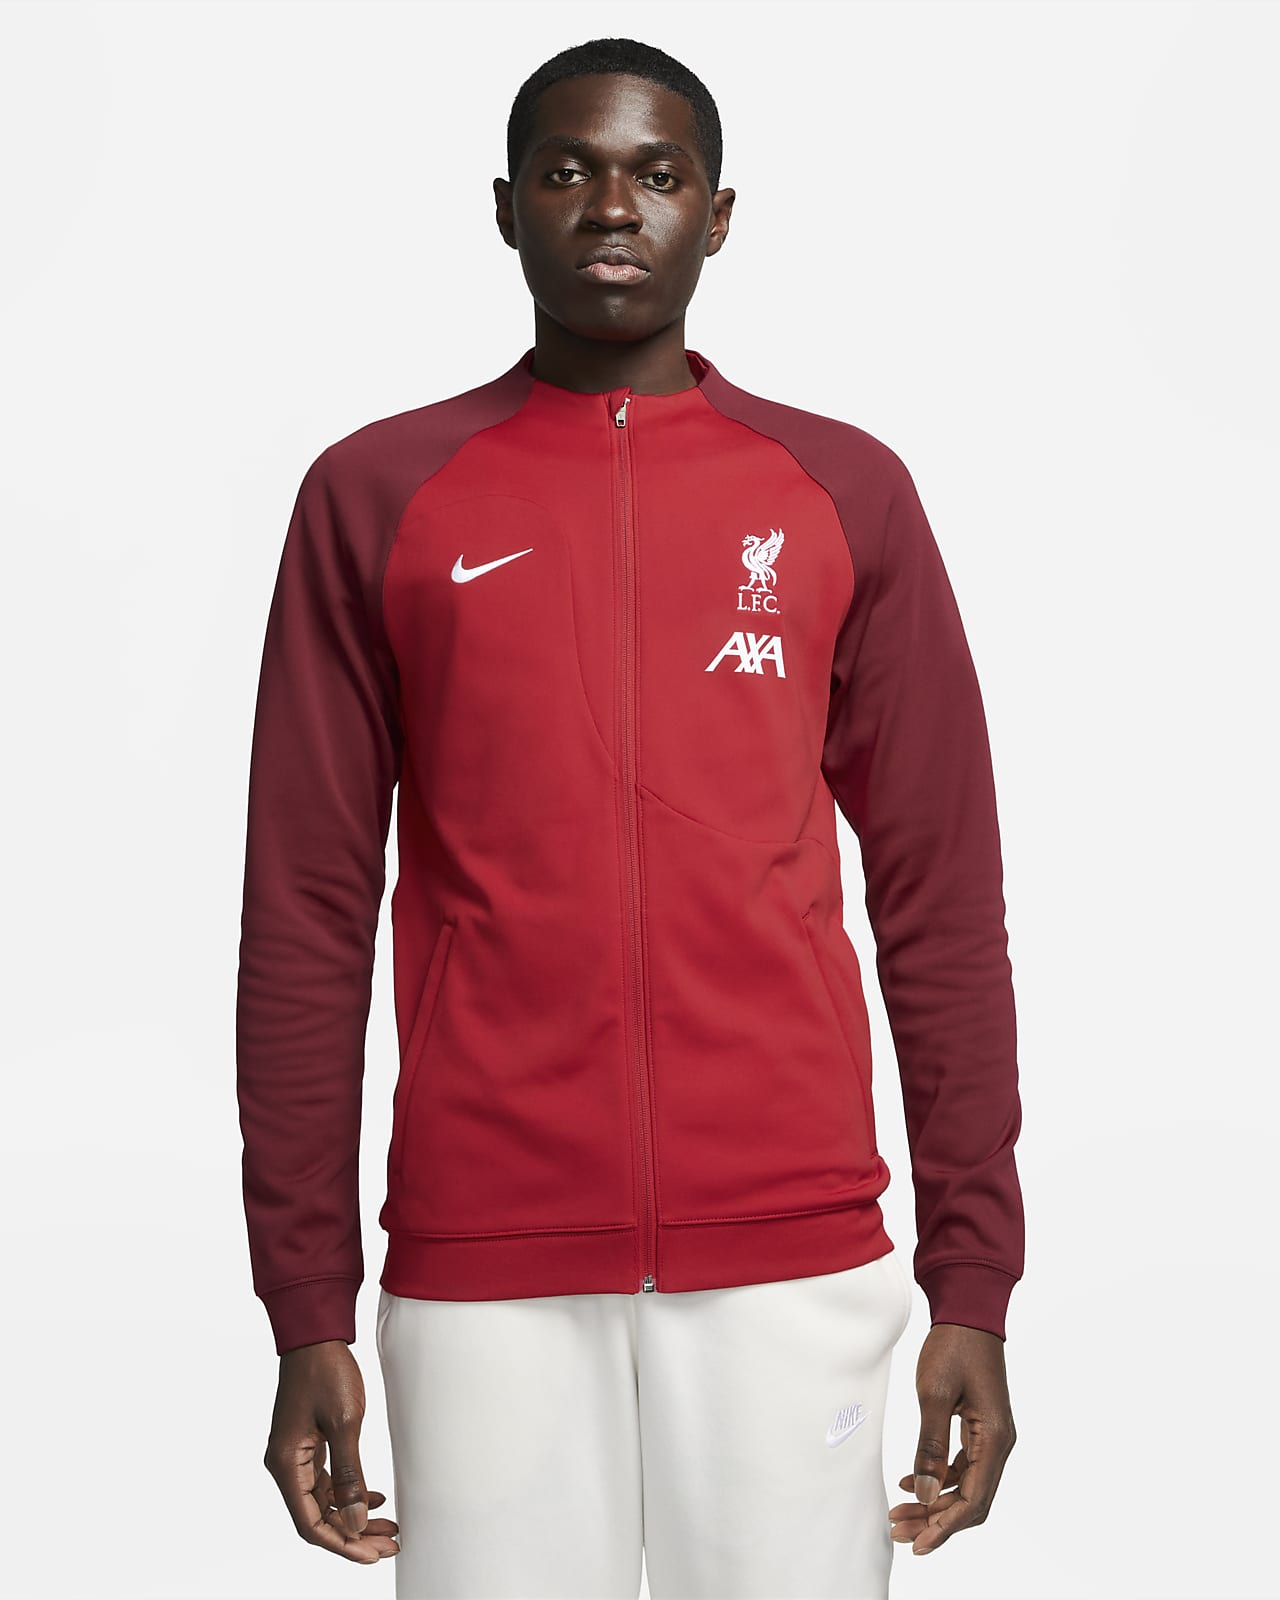 Pánská fotbalová bunda Nike Liverpool FC Academy Pro se zipem po celé délce